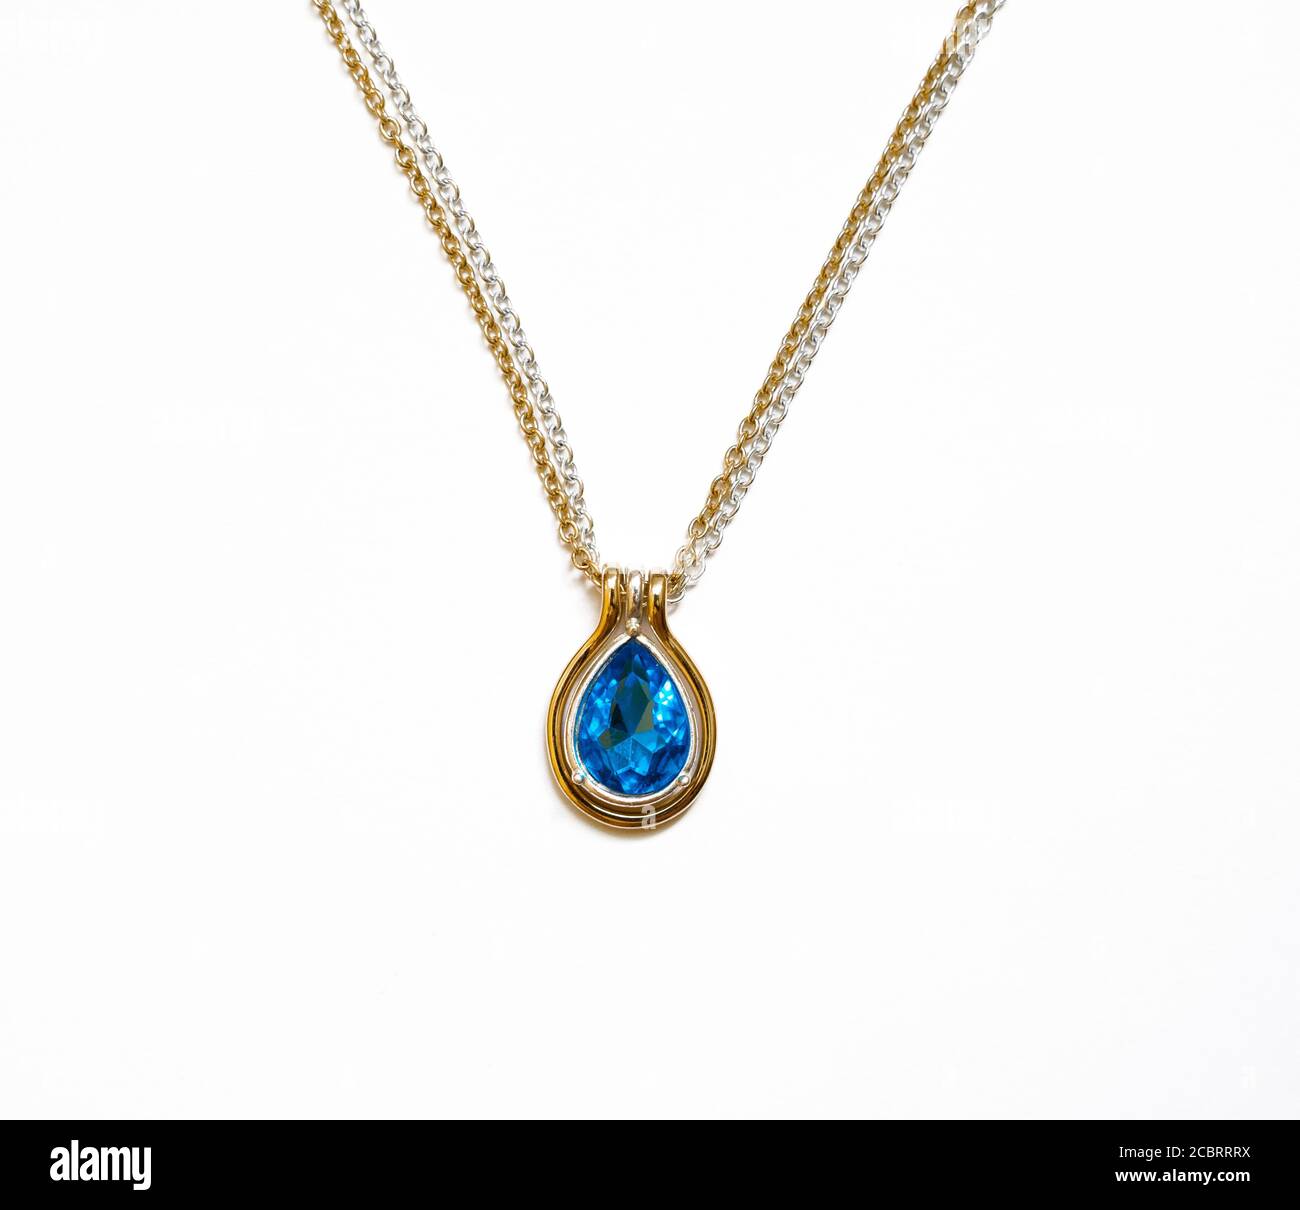 Collar de oro plateado con una piedra azul Fotografía de stock Alamy